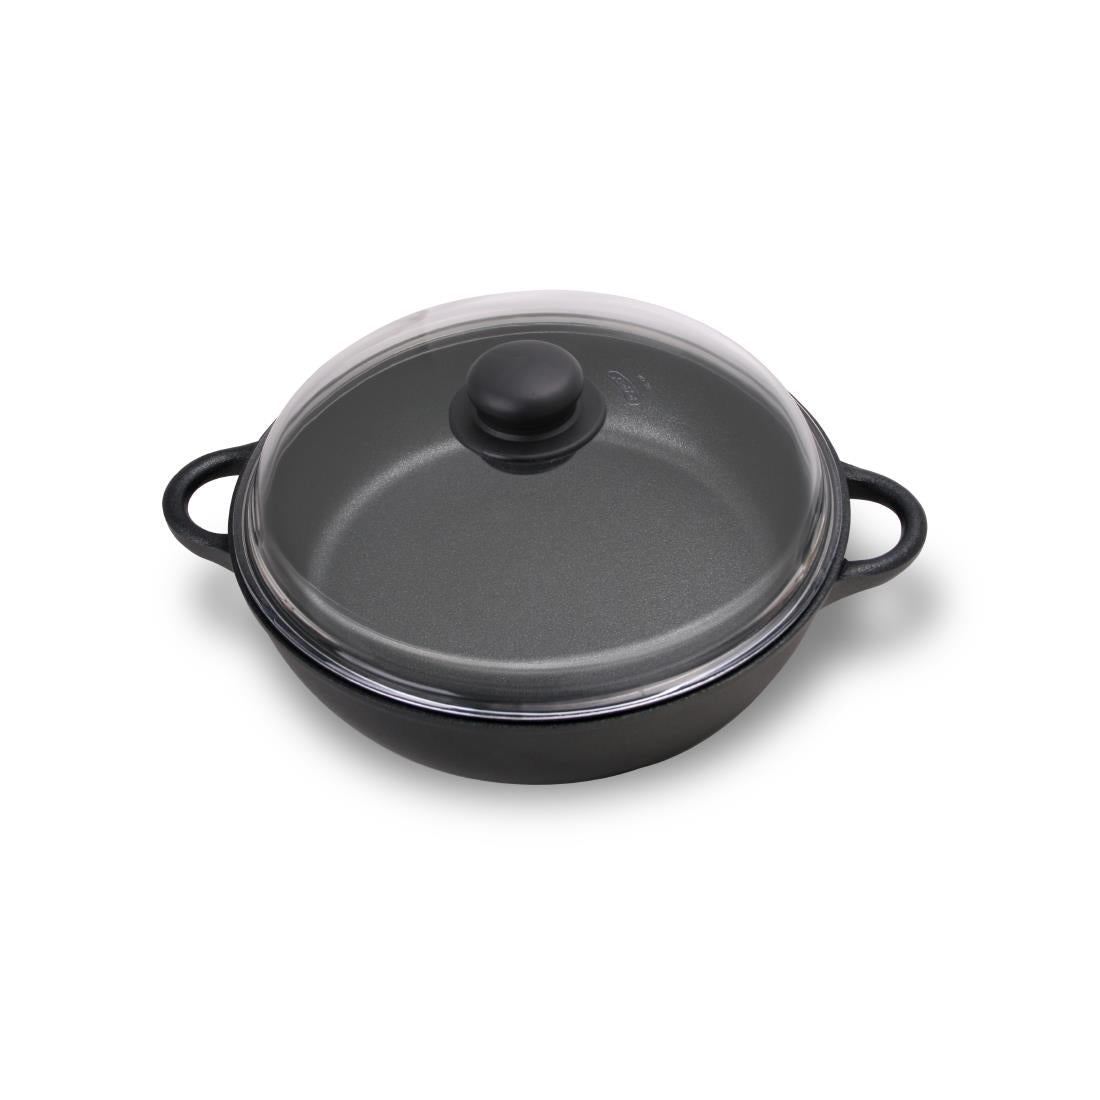 AT316 Josper Charcoal Oven Casserole Dish Ã˜ 28